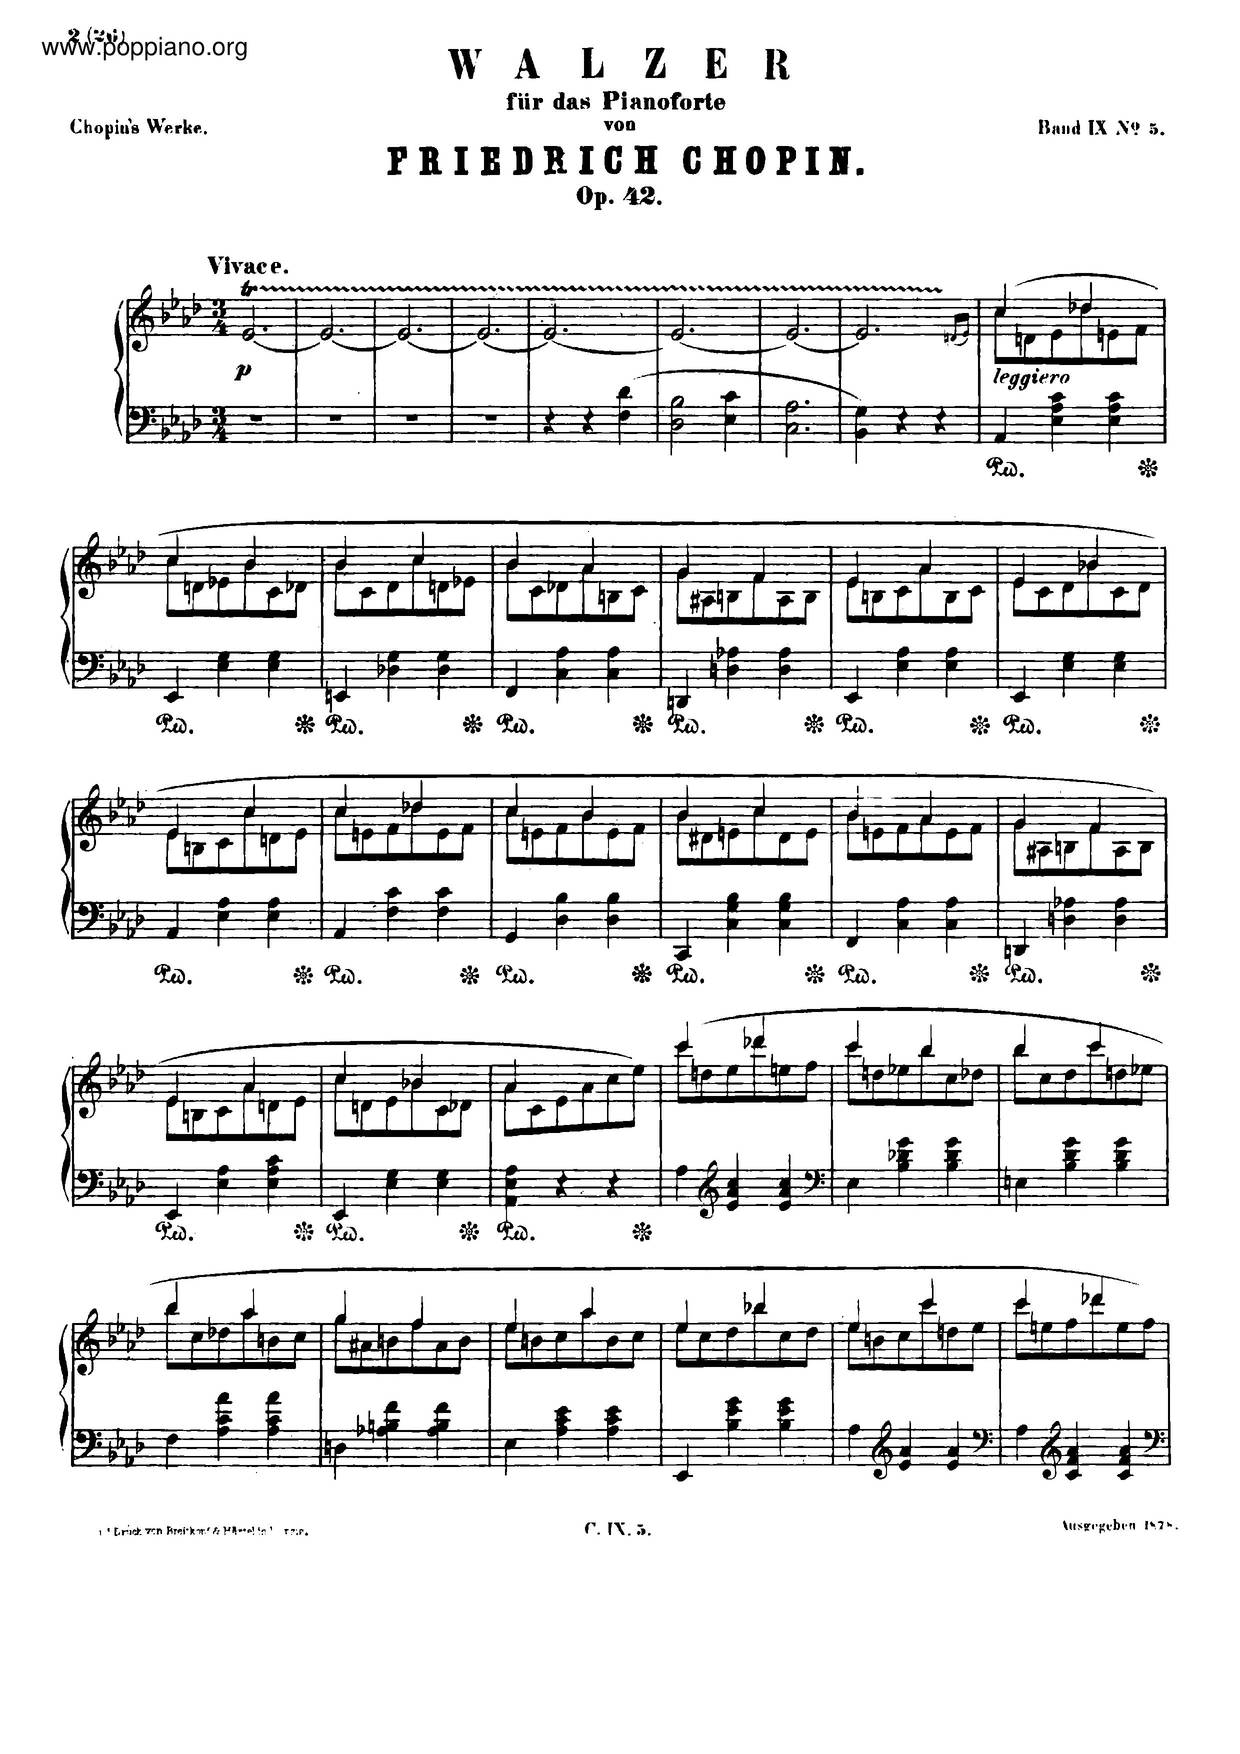 Waltz In A-Flat Major, Op. 42 Score